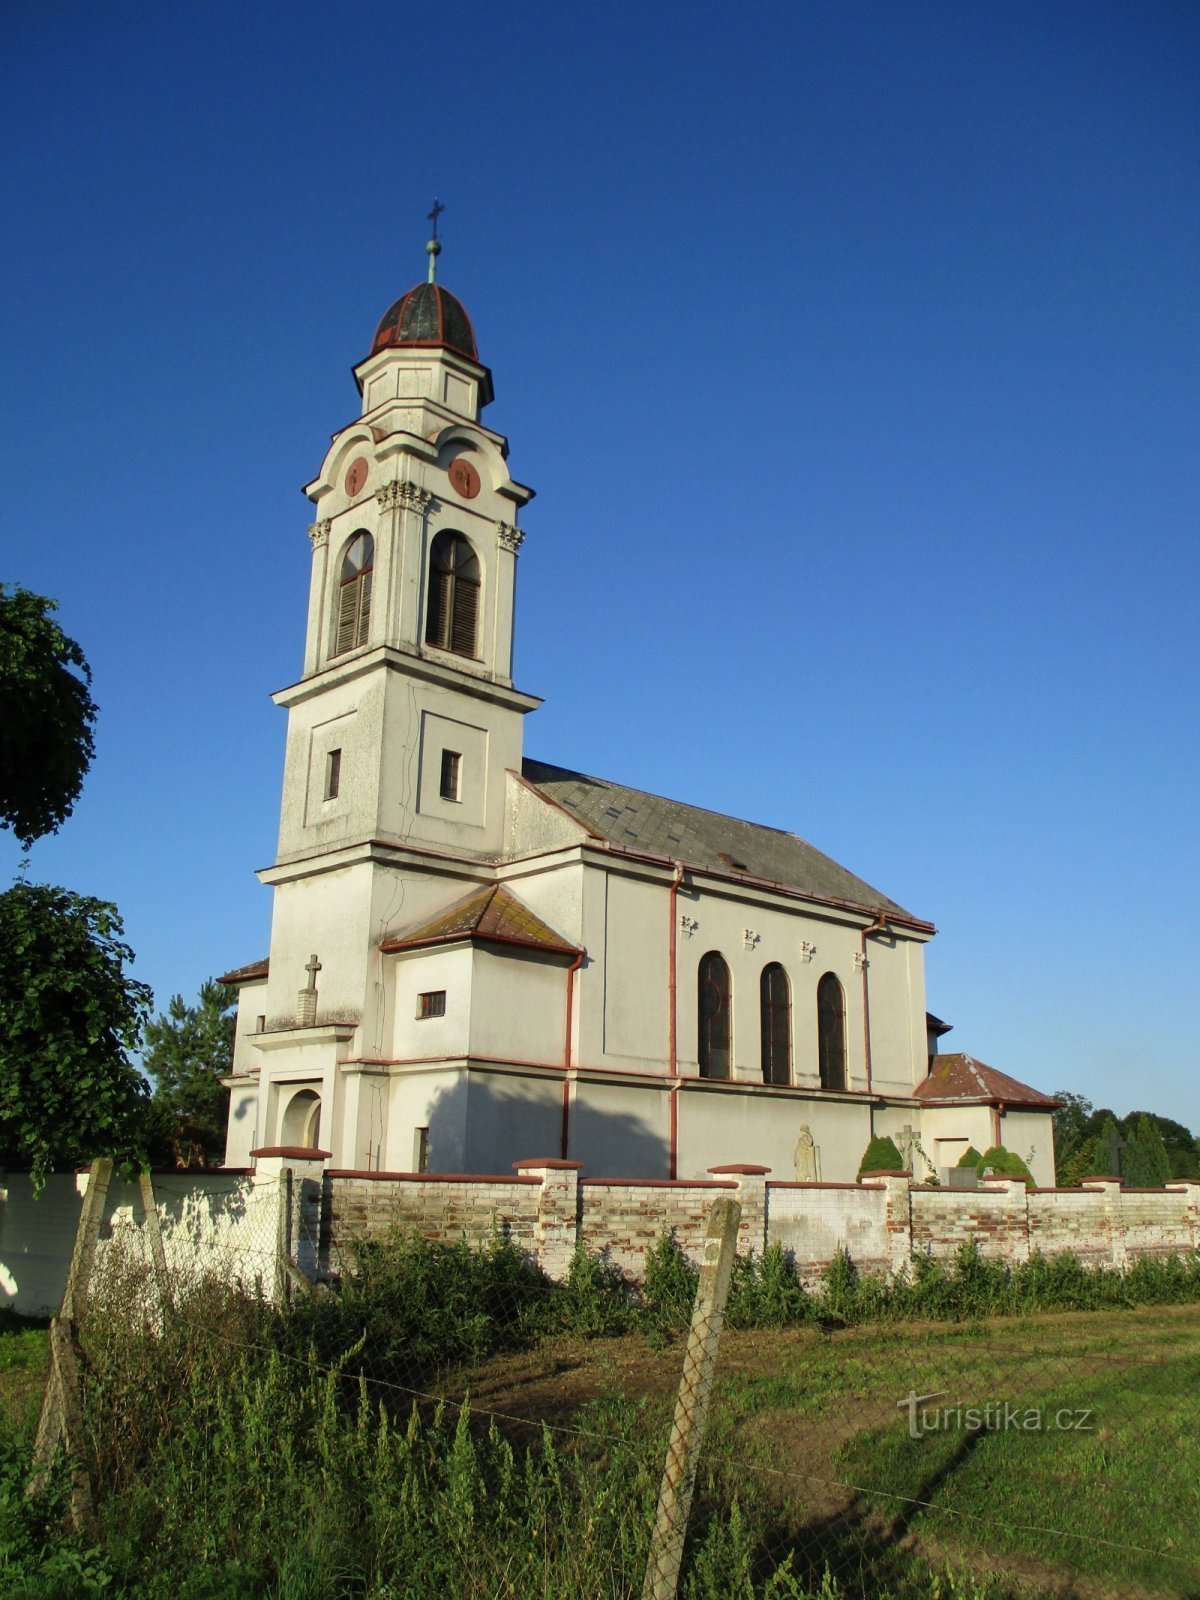 Church of St. Nicholas (Podůlšany)